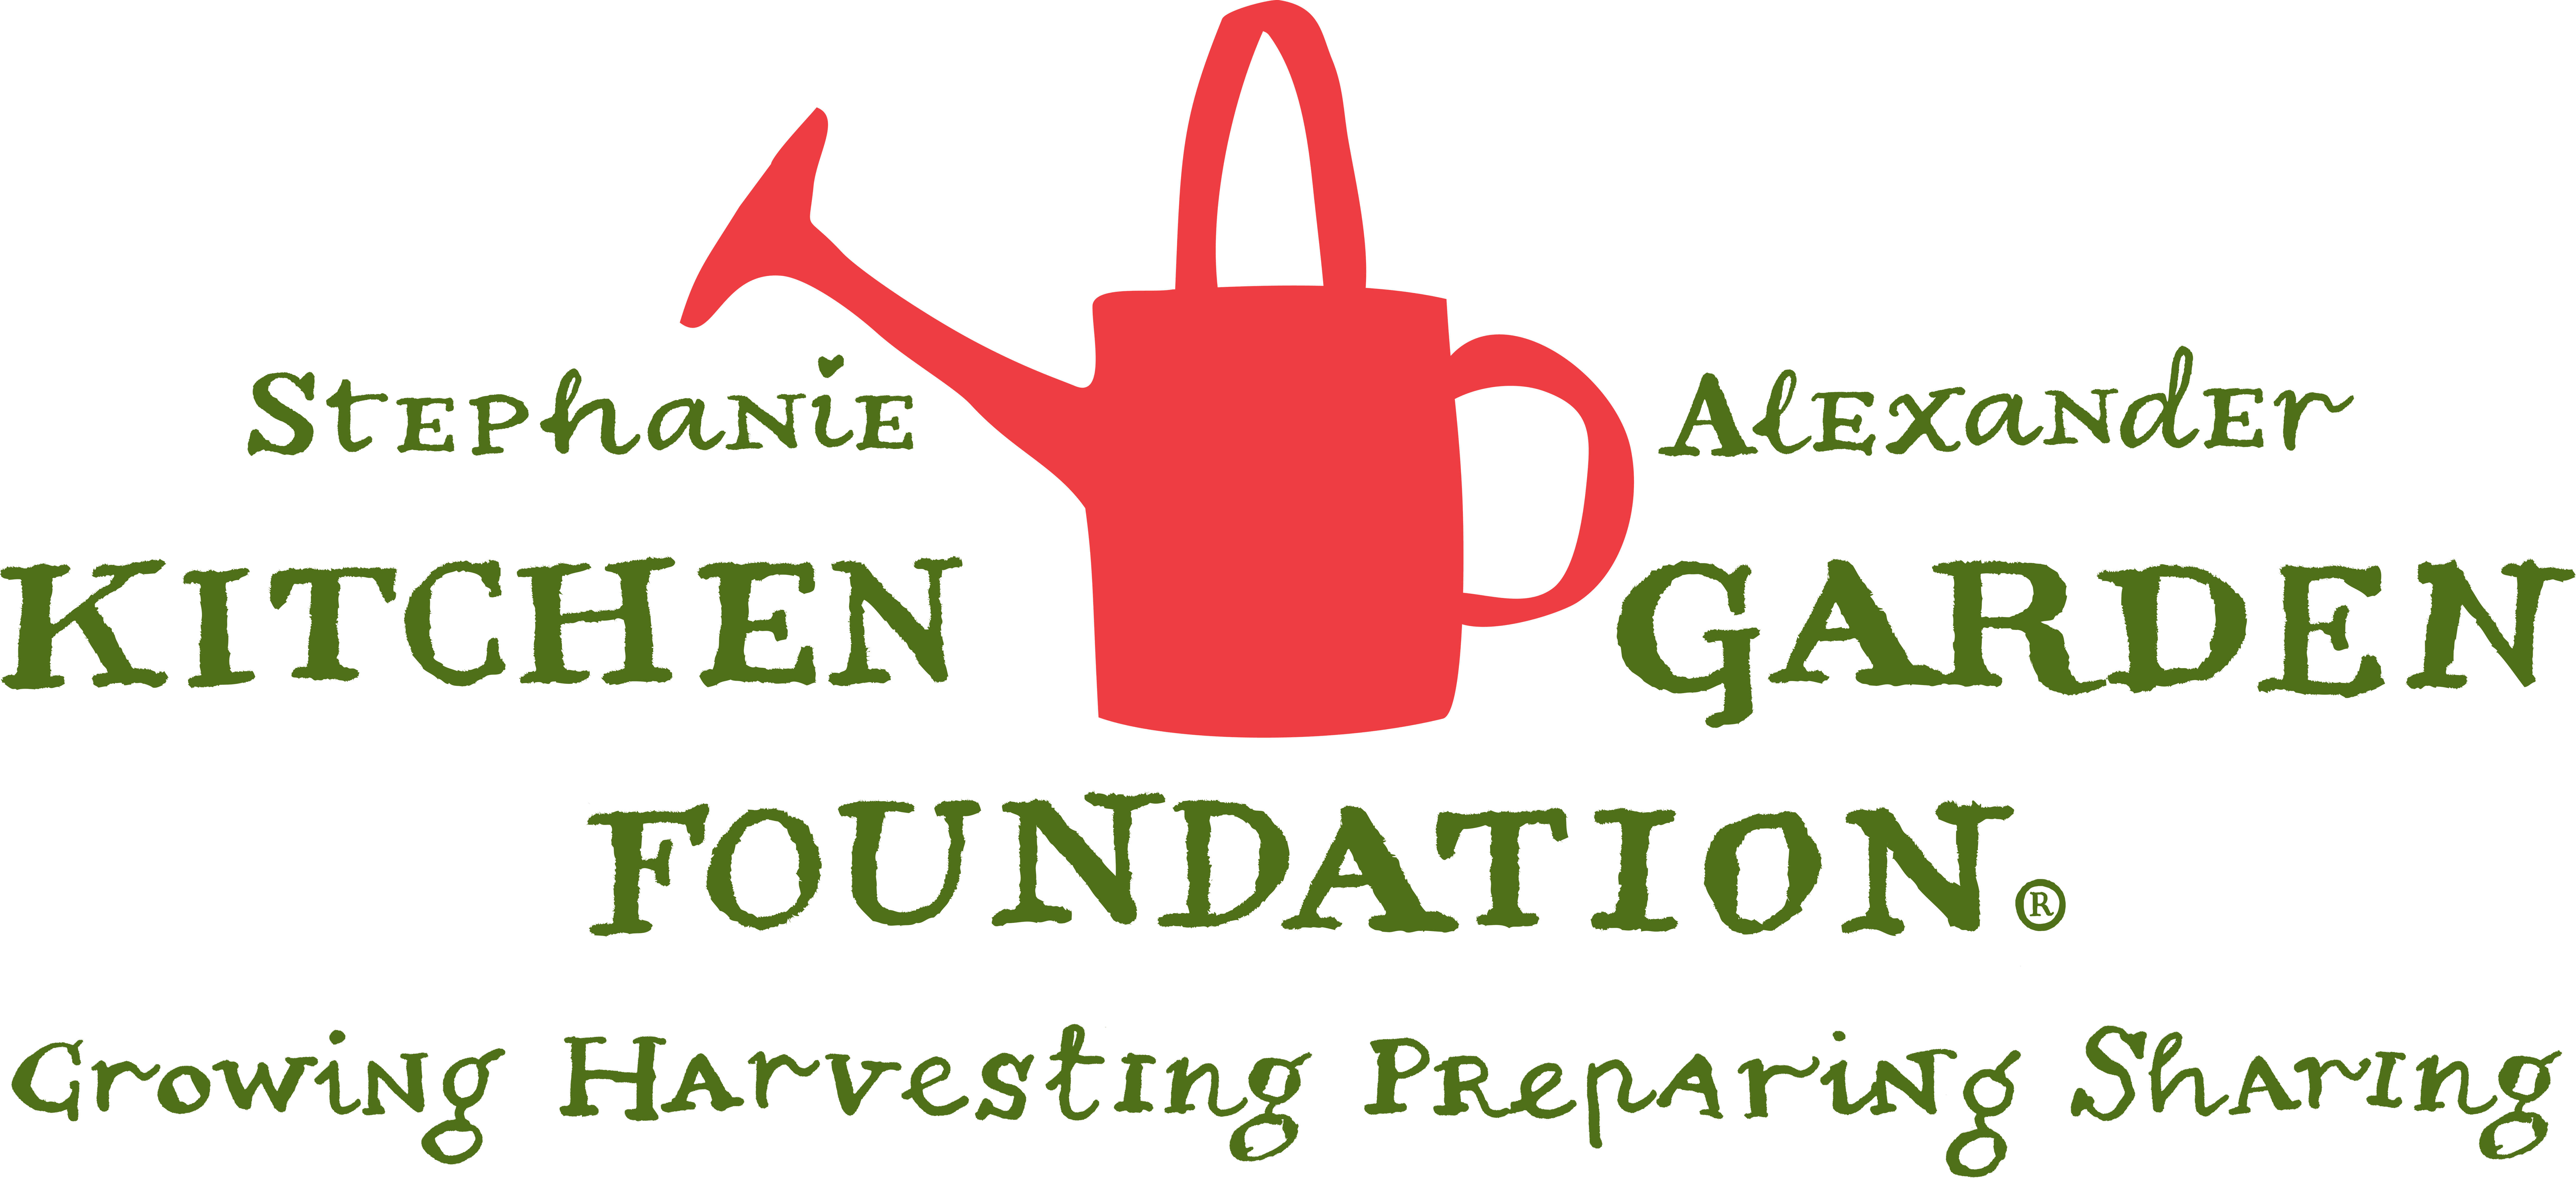 Stephanie Alexander Kitchen Garden Foundation